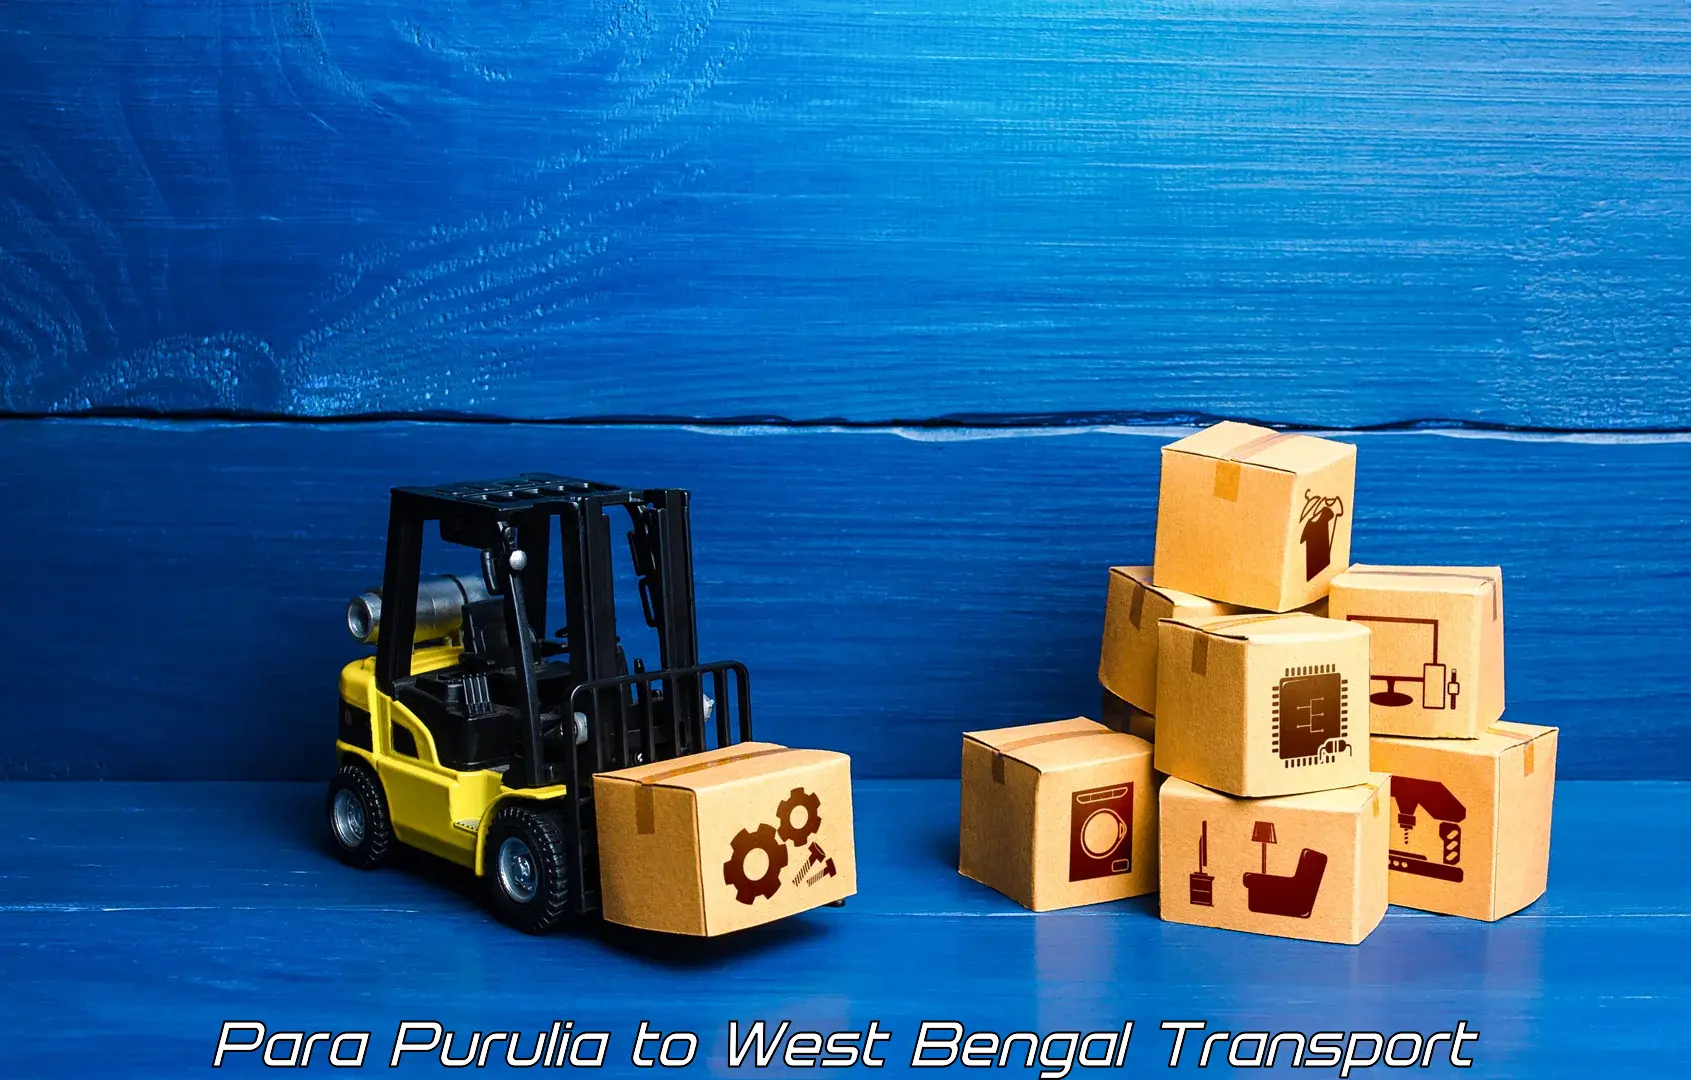 Pick up transport service Para Purulia to Pandua